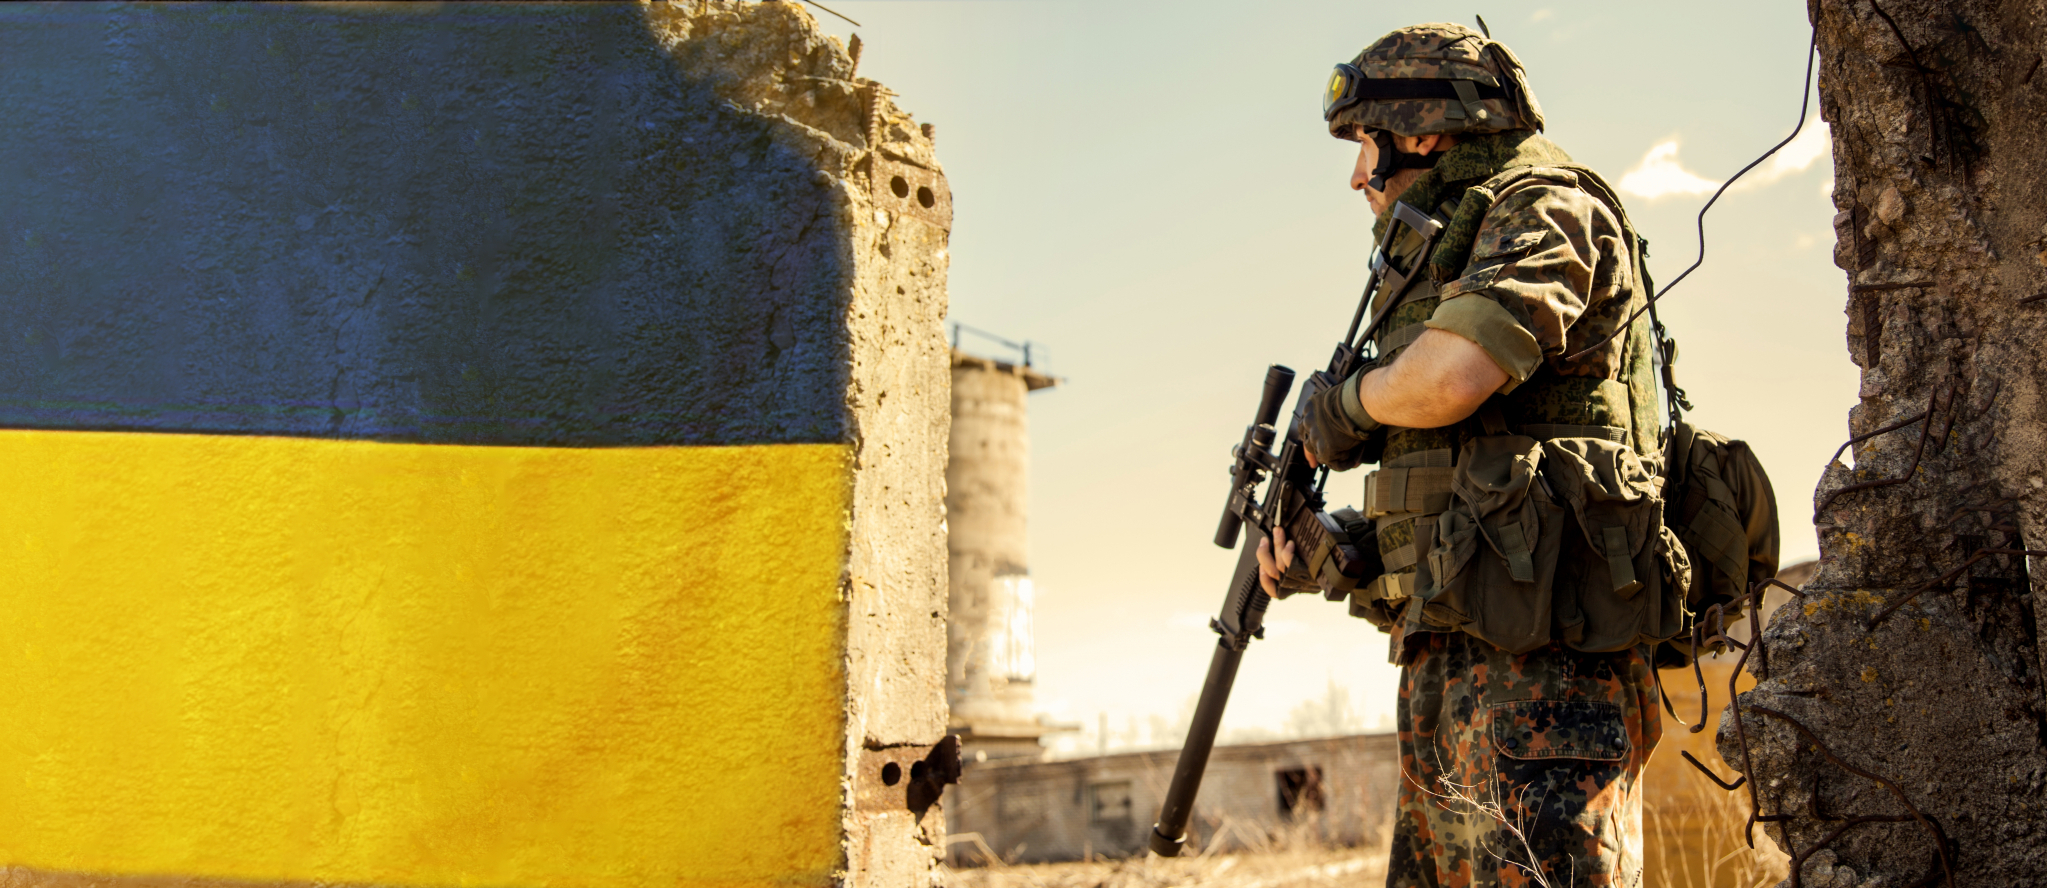 RUSIJA ŽELI DA UNIŠTI SVAKI GRAD U DONBASU Dnevno pogine najmanje 200-300 ukrajinkih vojnika